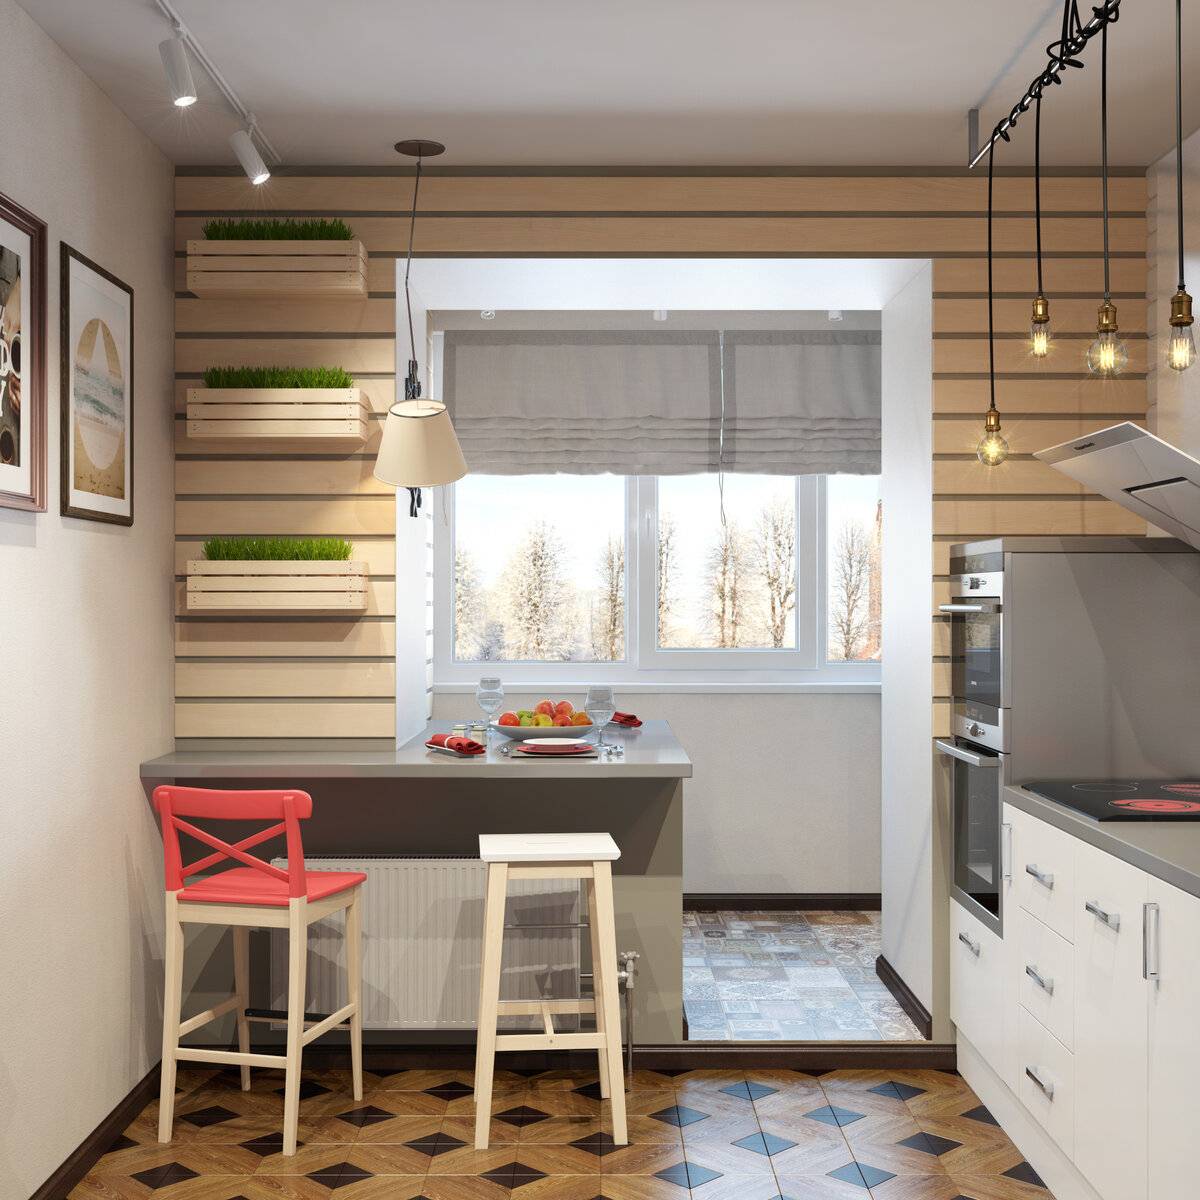 Кухня на балконе или лоджии — фото дизайнов интерьера - портал о строительстве, ремонте и дизайне